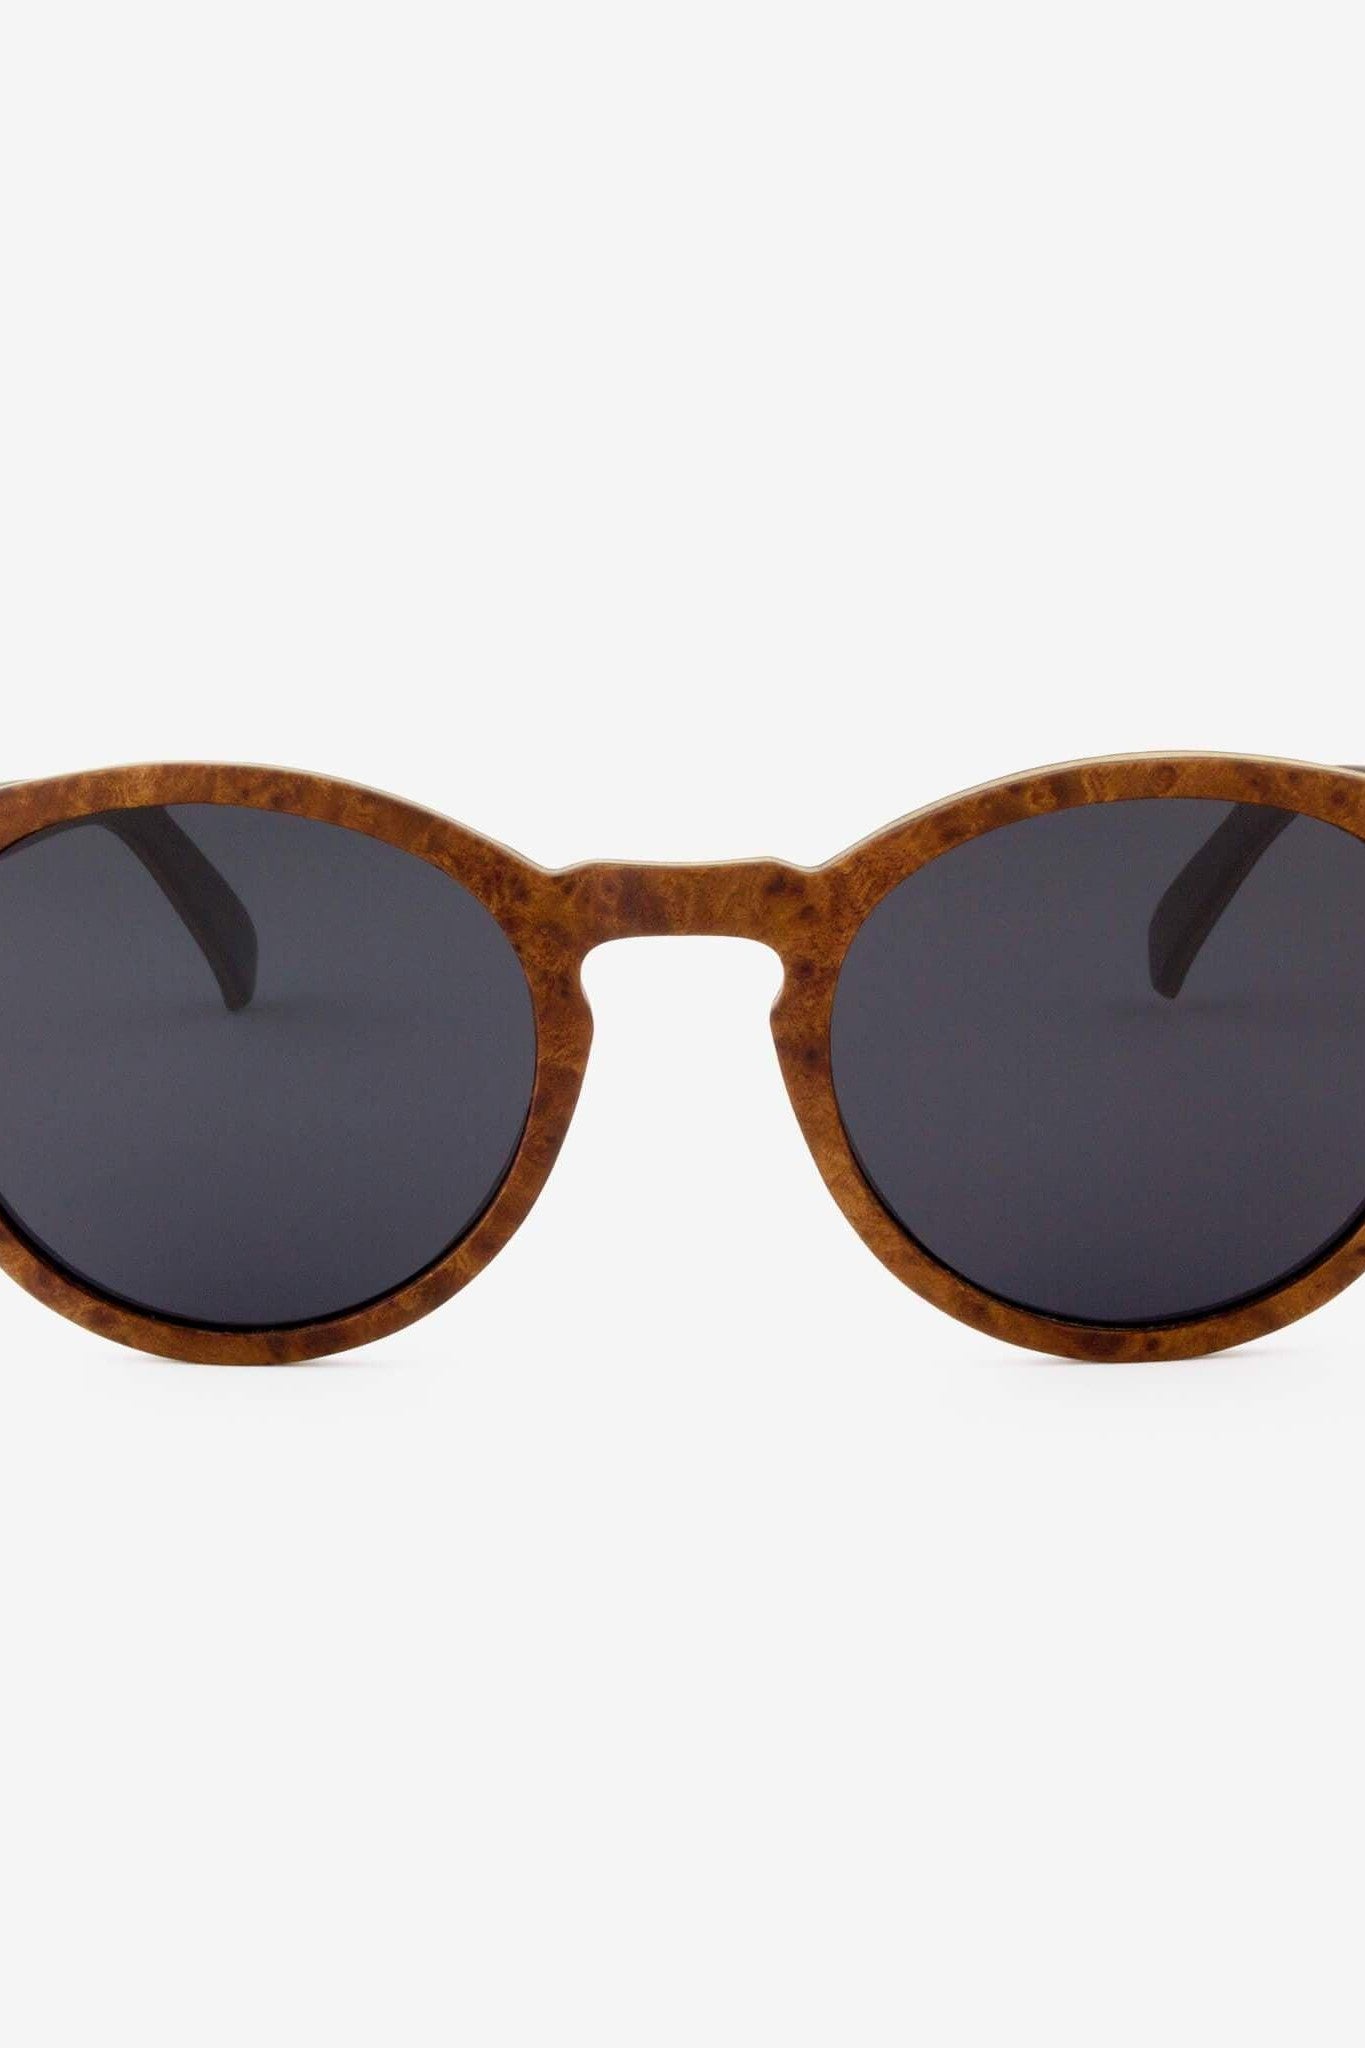 Nassau - Wood Sunglasses - Mack & Harvie